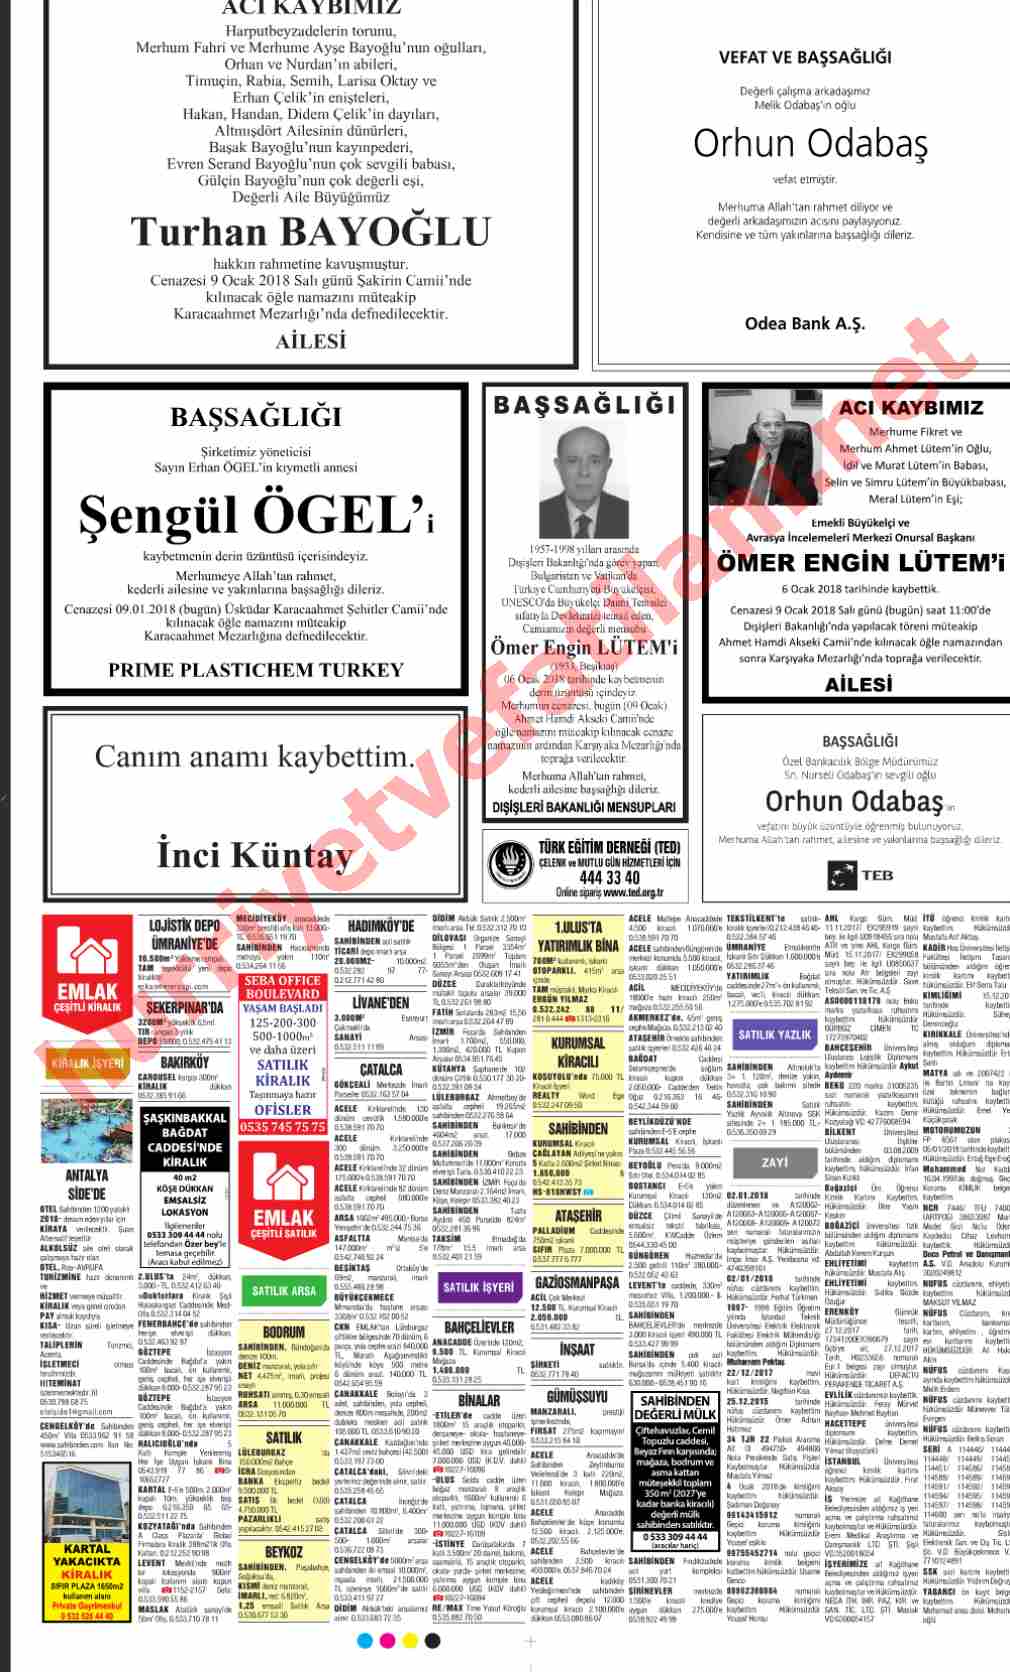 09 Ocak 2018 Salı Günü Hürriyet Gazetesinde Yayınlanmış Vefat İlanları Sayfası